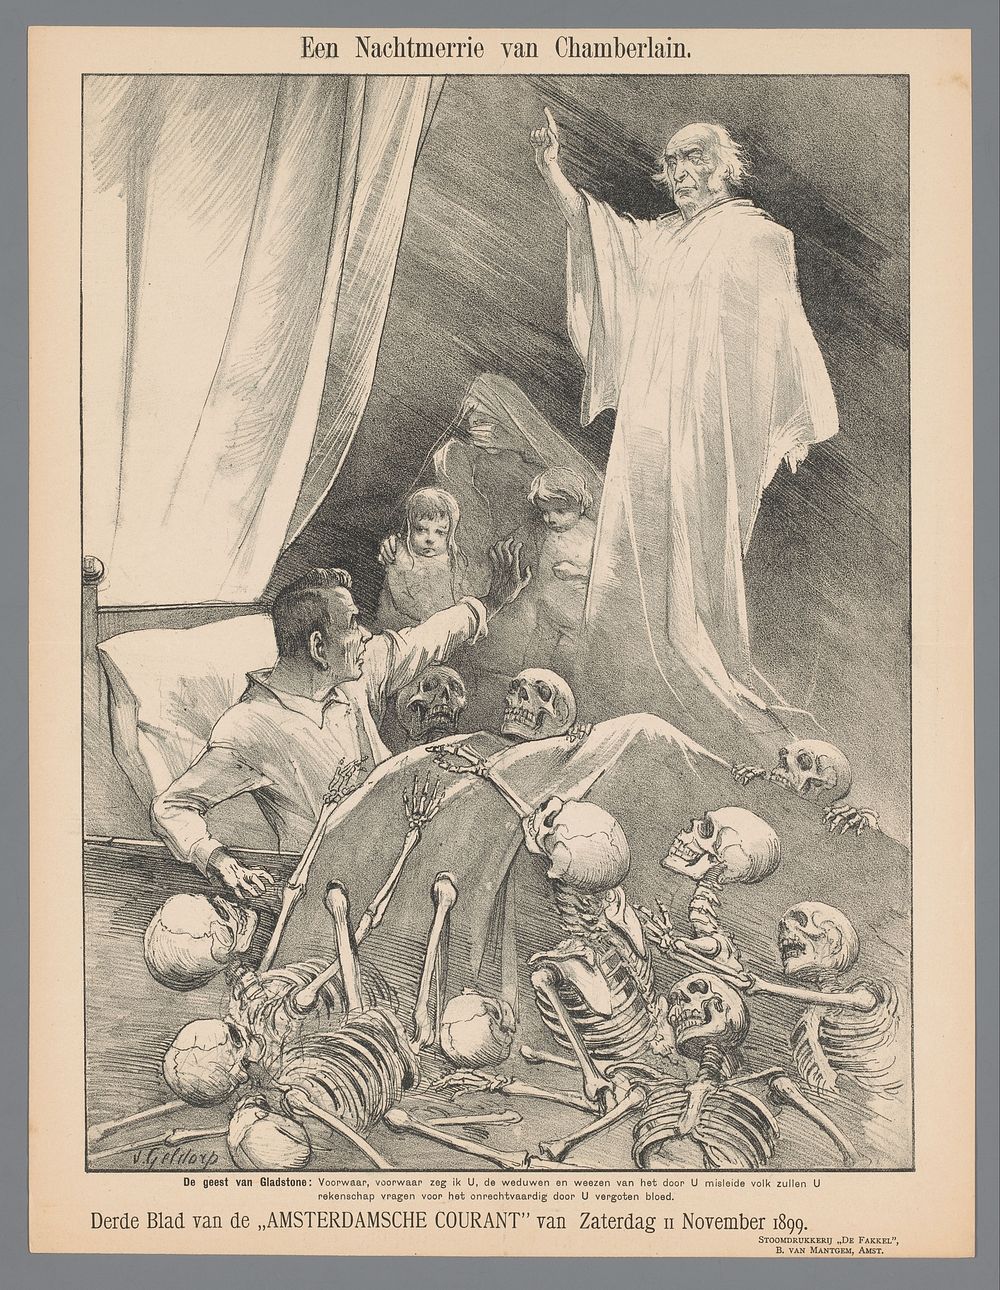 Een Nachtmerrie van Chamberlain (1899) by Petrus van Geldorp and De Fakkel